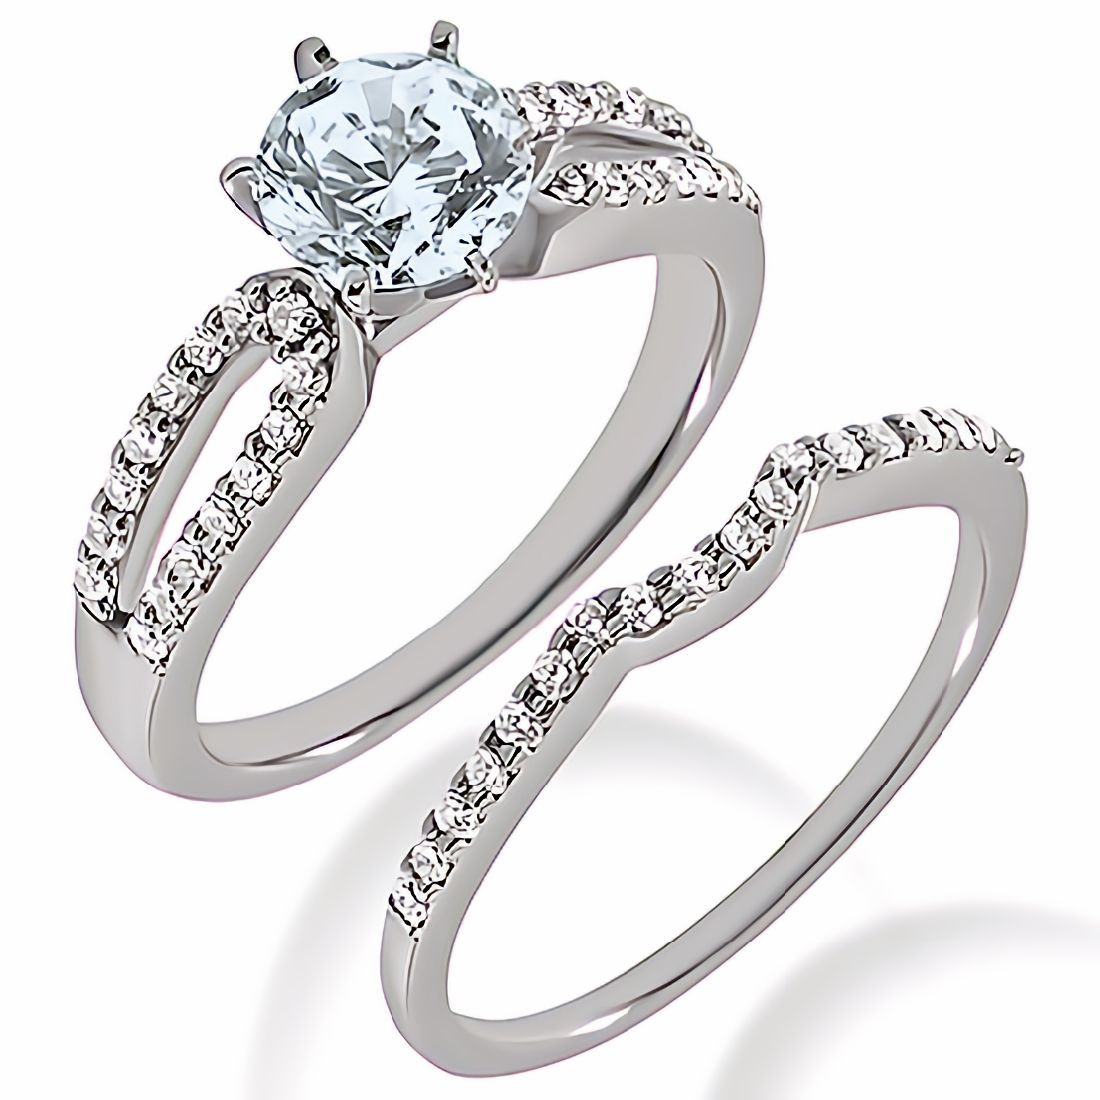 Blue Aquamarine Diamond Engagement Ring Set